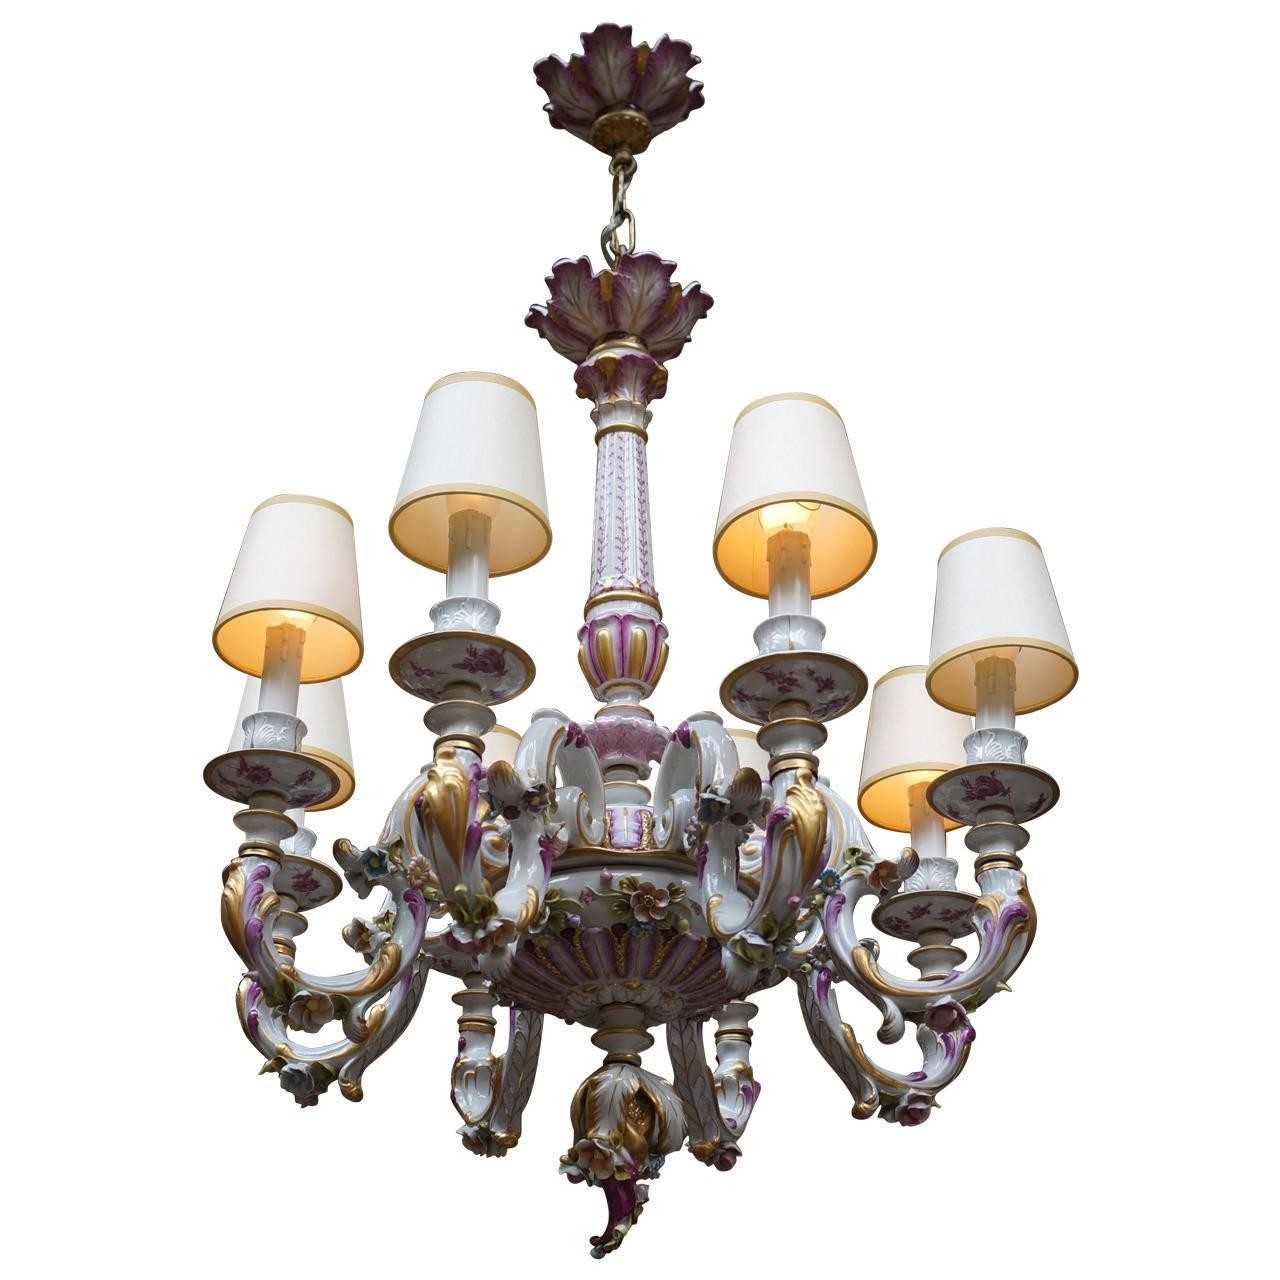 Capodimonte italian porcelain eight light chandelier for